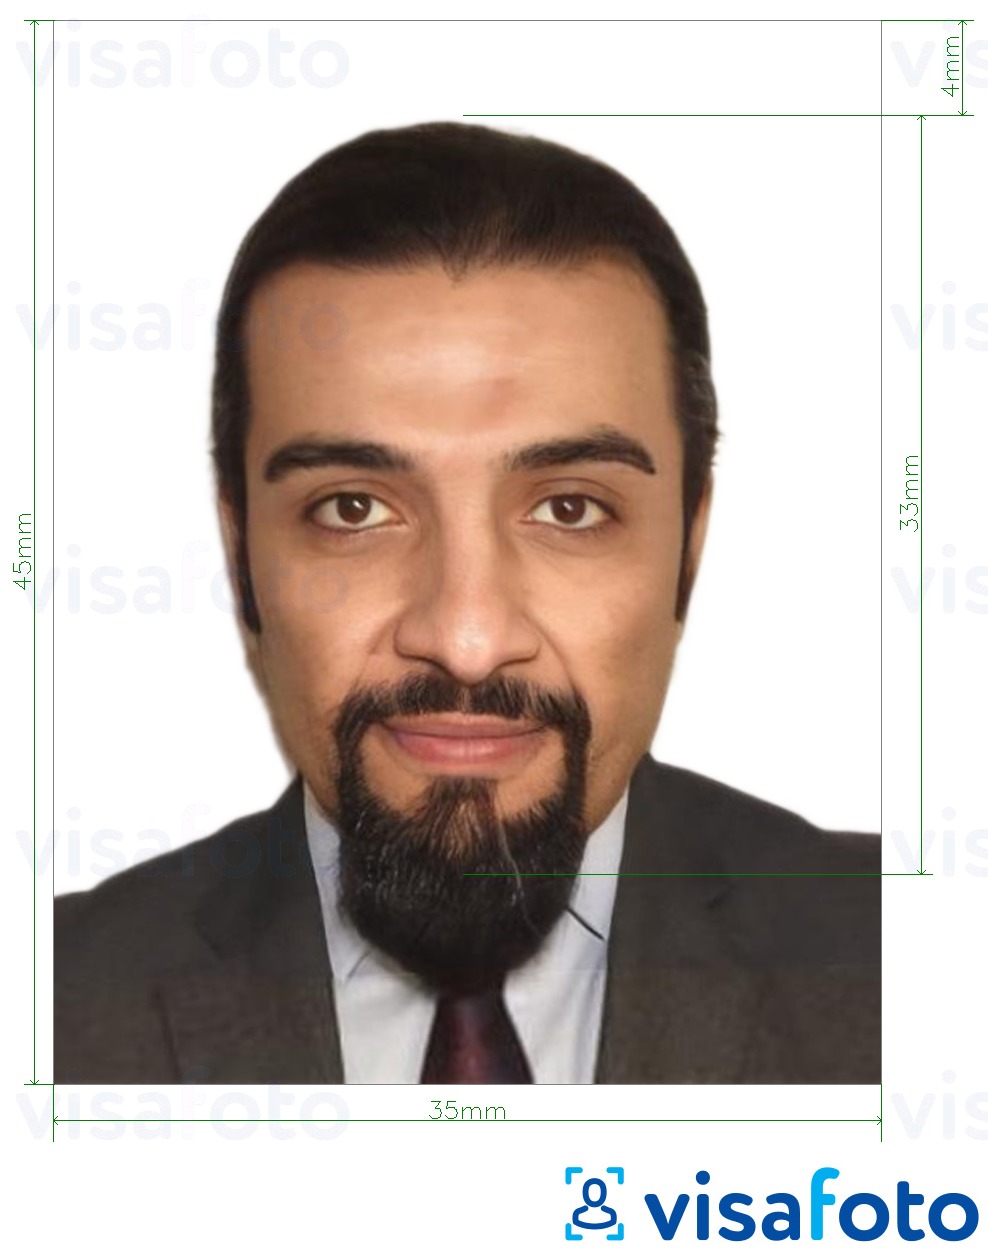 Contoh dari foto untuk Paspor Tunisia 3.5x4.5 cm (35x45 mm) dengan ukuran spesifikasi yang tepat